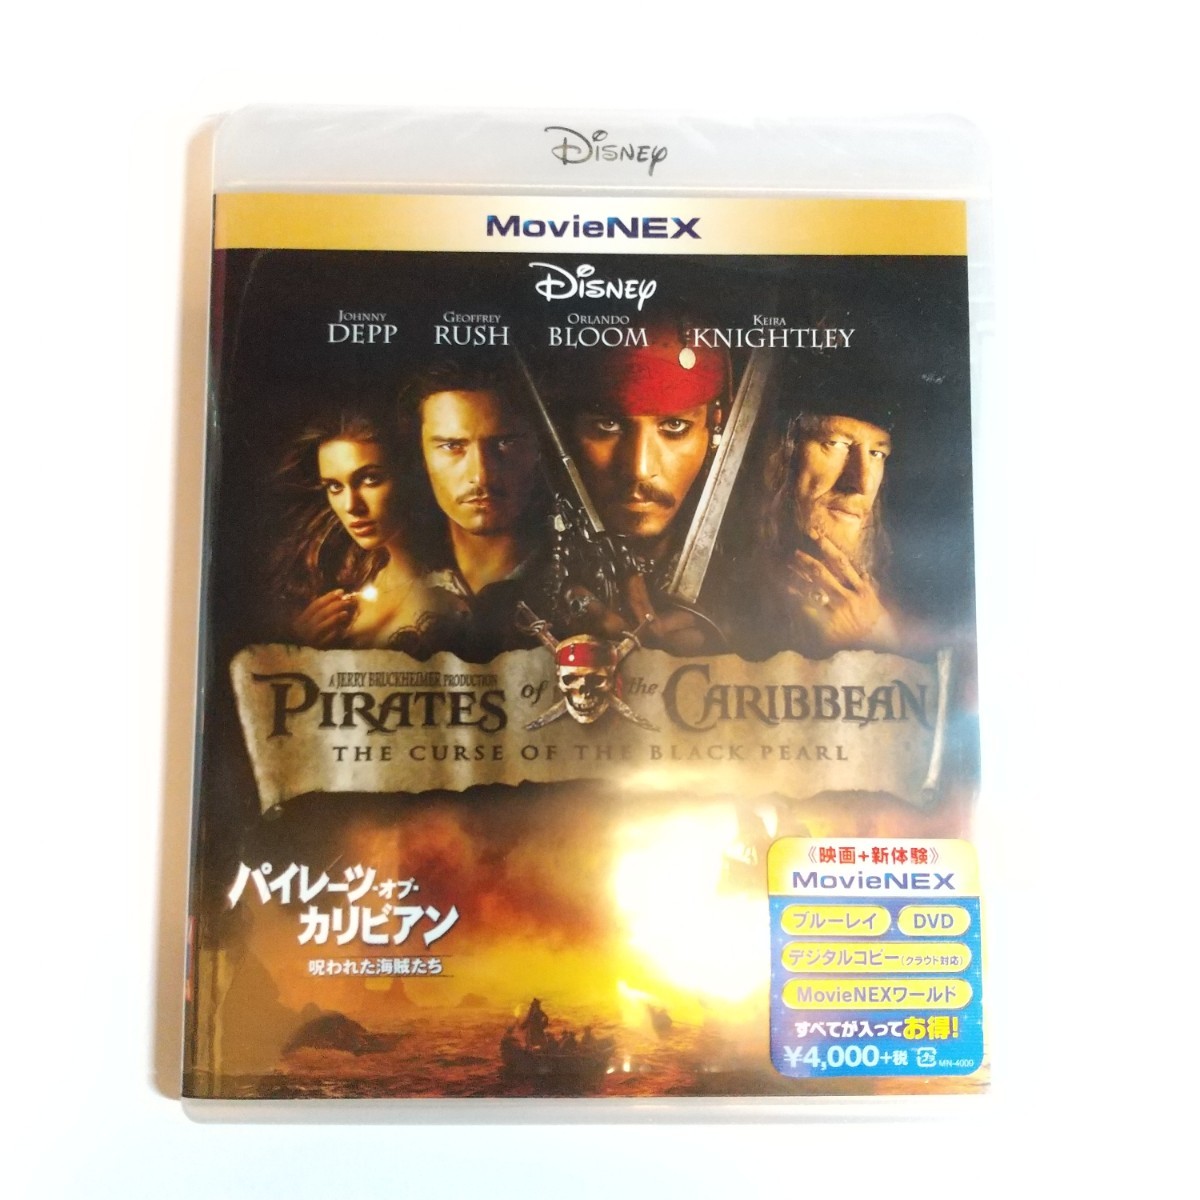 ディズニー  パイレーツ・オブ・カリビアン 呪われた海賊たち  MovieNEX Blu-ray+DVD  ブルーレイ 